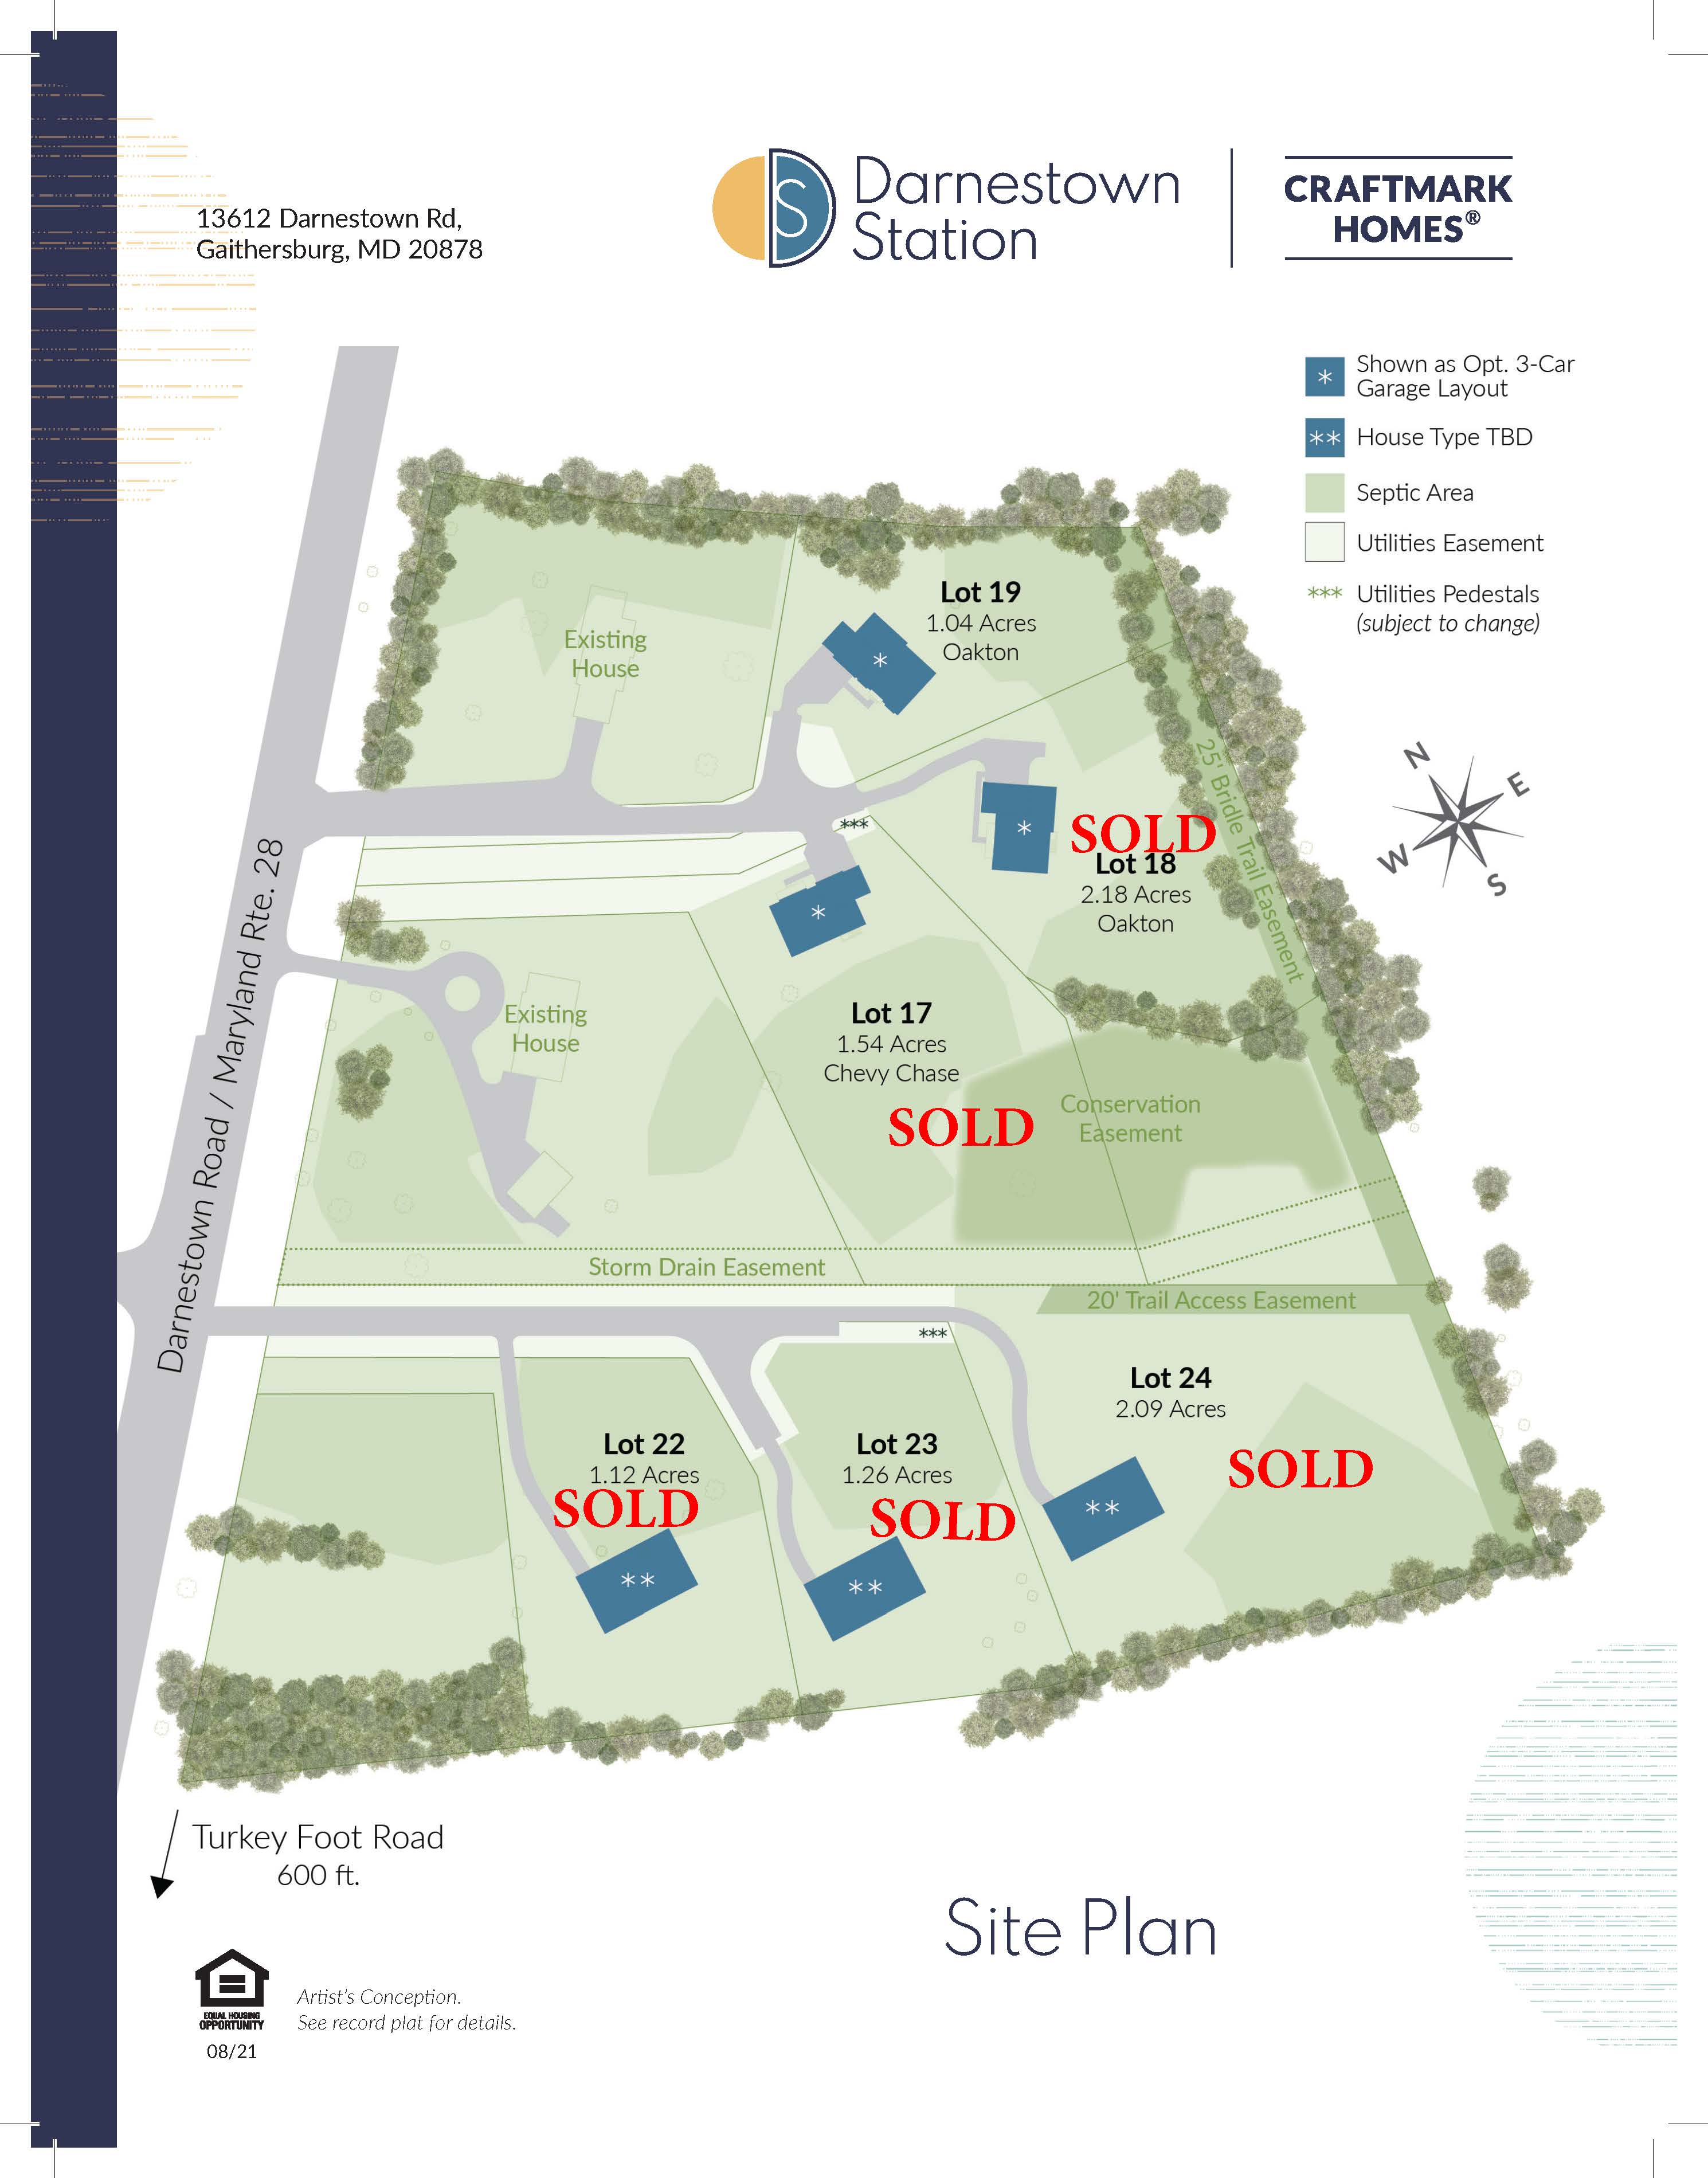 Darnestown Station Site Plan, Craftmark Homes